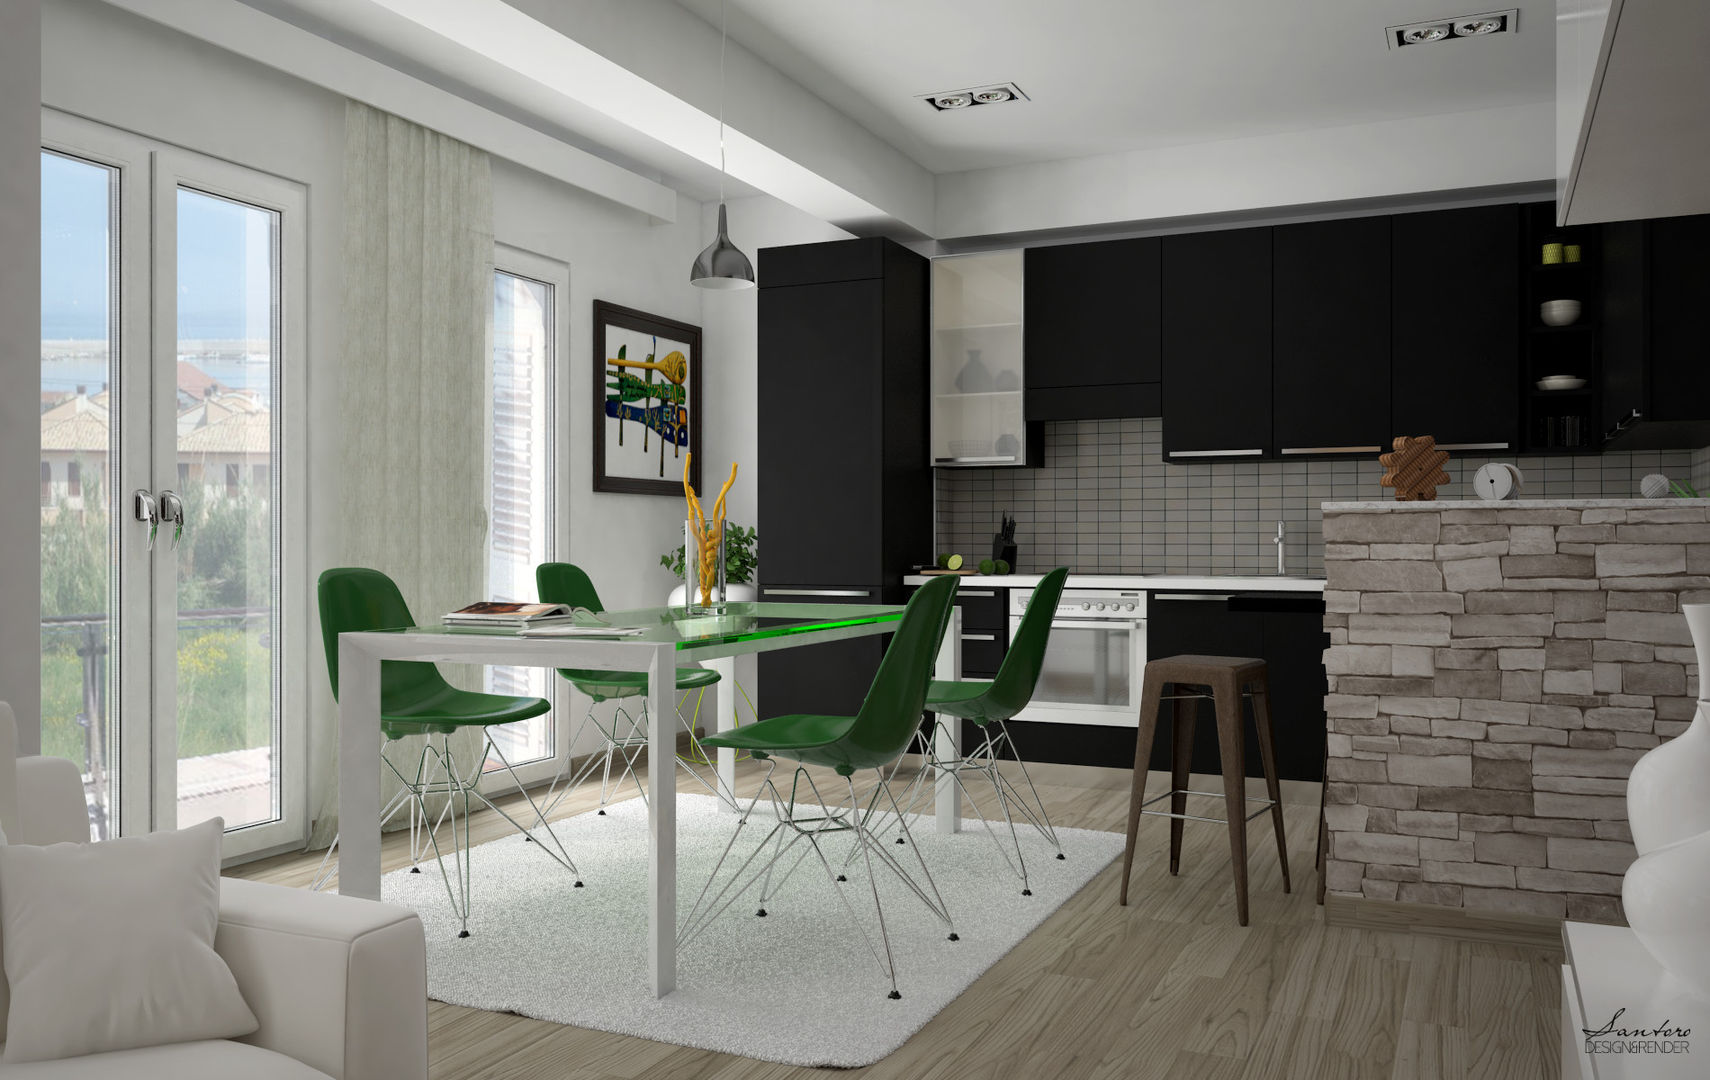 Design & Render livingroom – arredamento S.Agata Militello (ME) , Santoro Design Render Santoro Design Render Cozinhas modernas